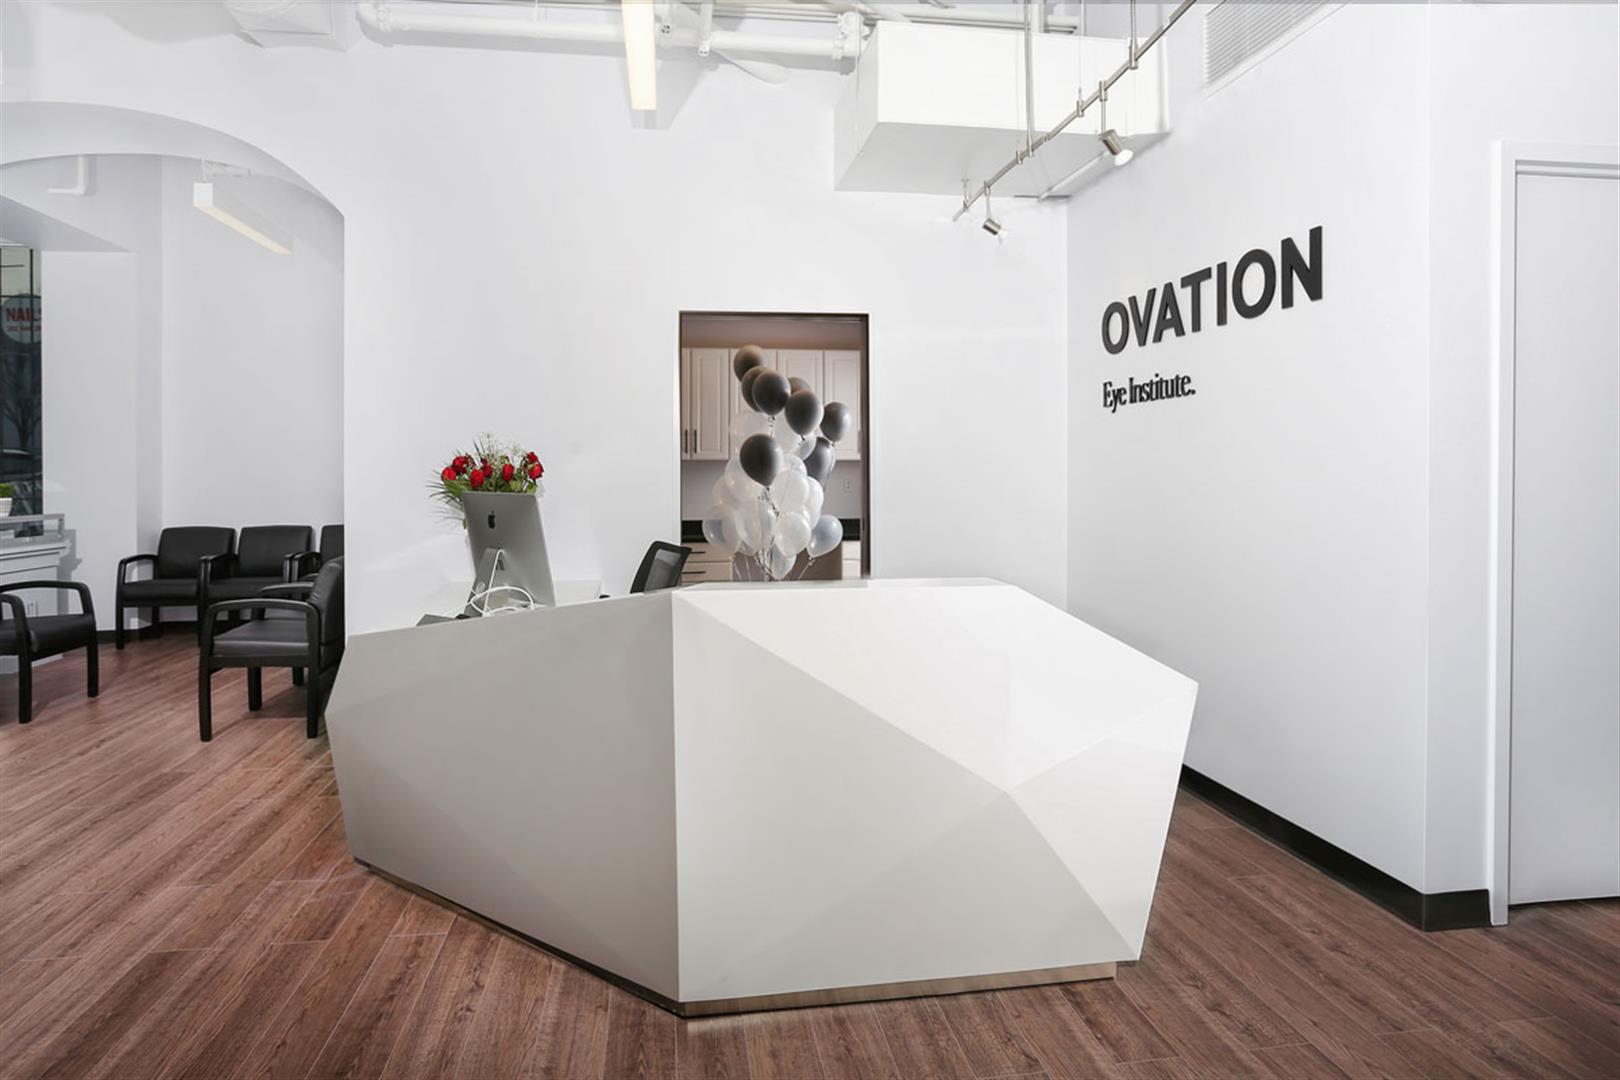 Ovation eye institute | Interior Design Portfolio